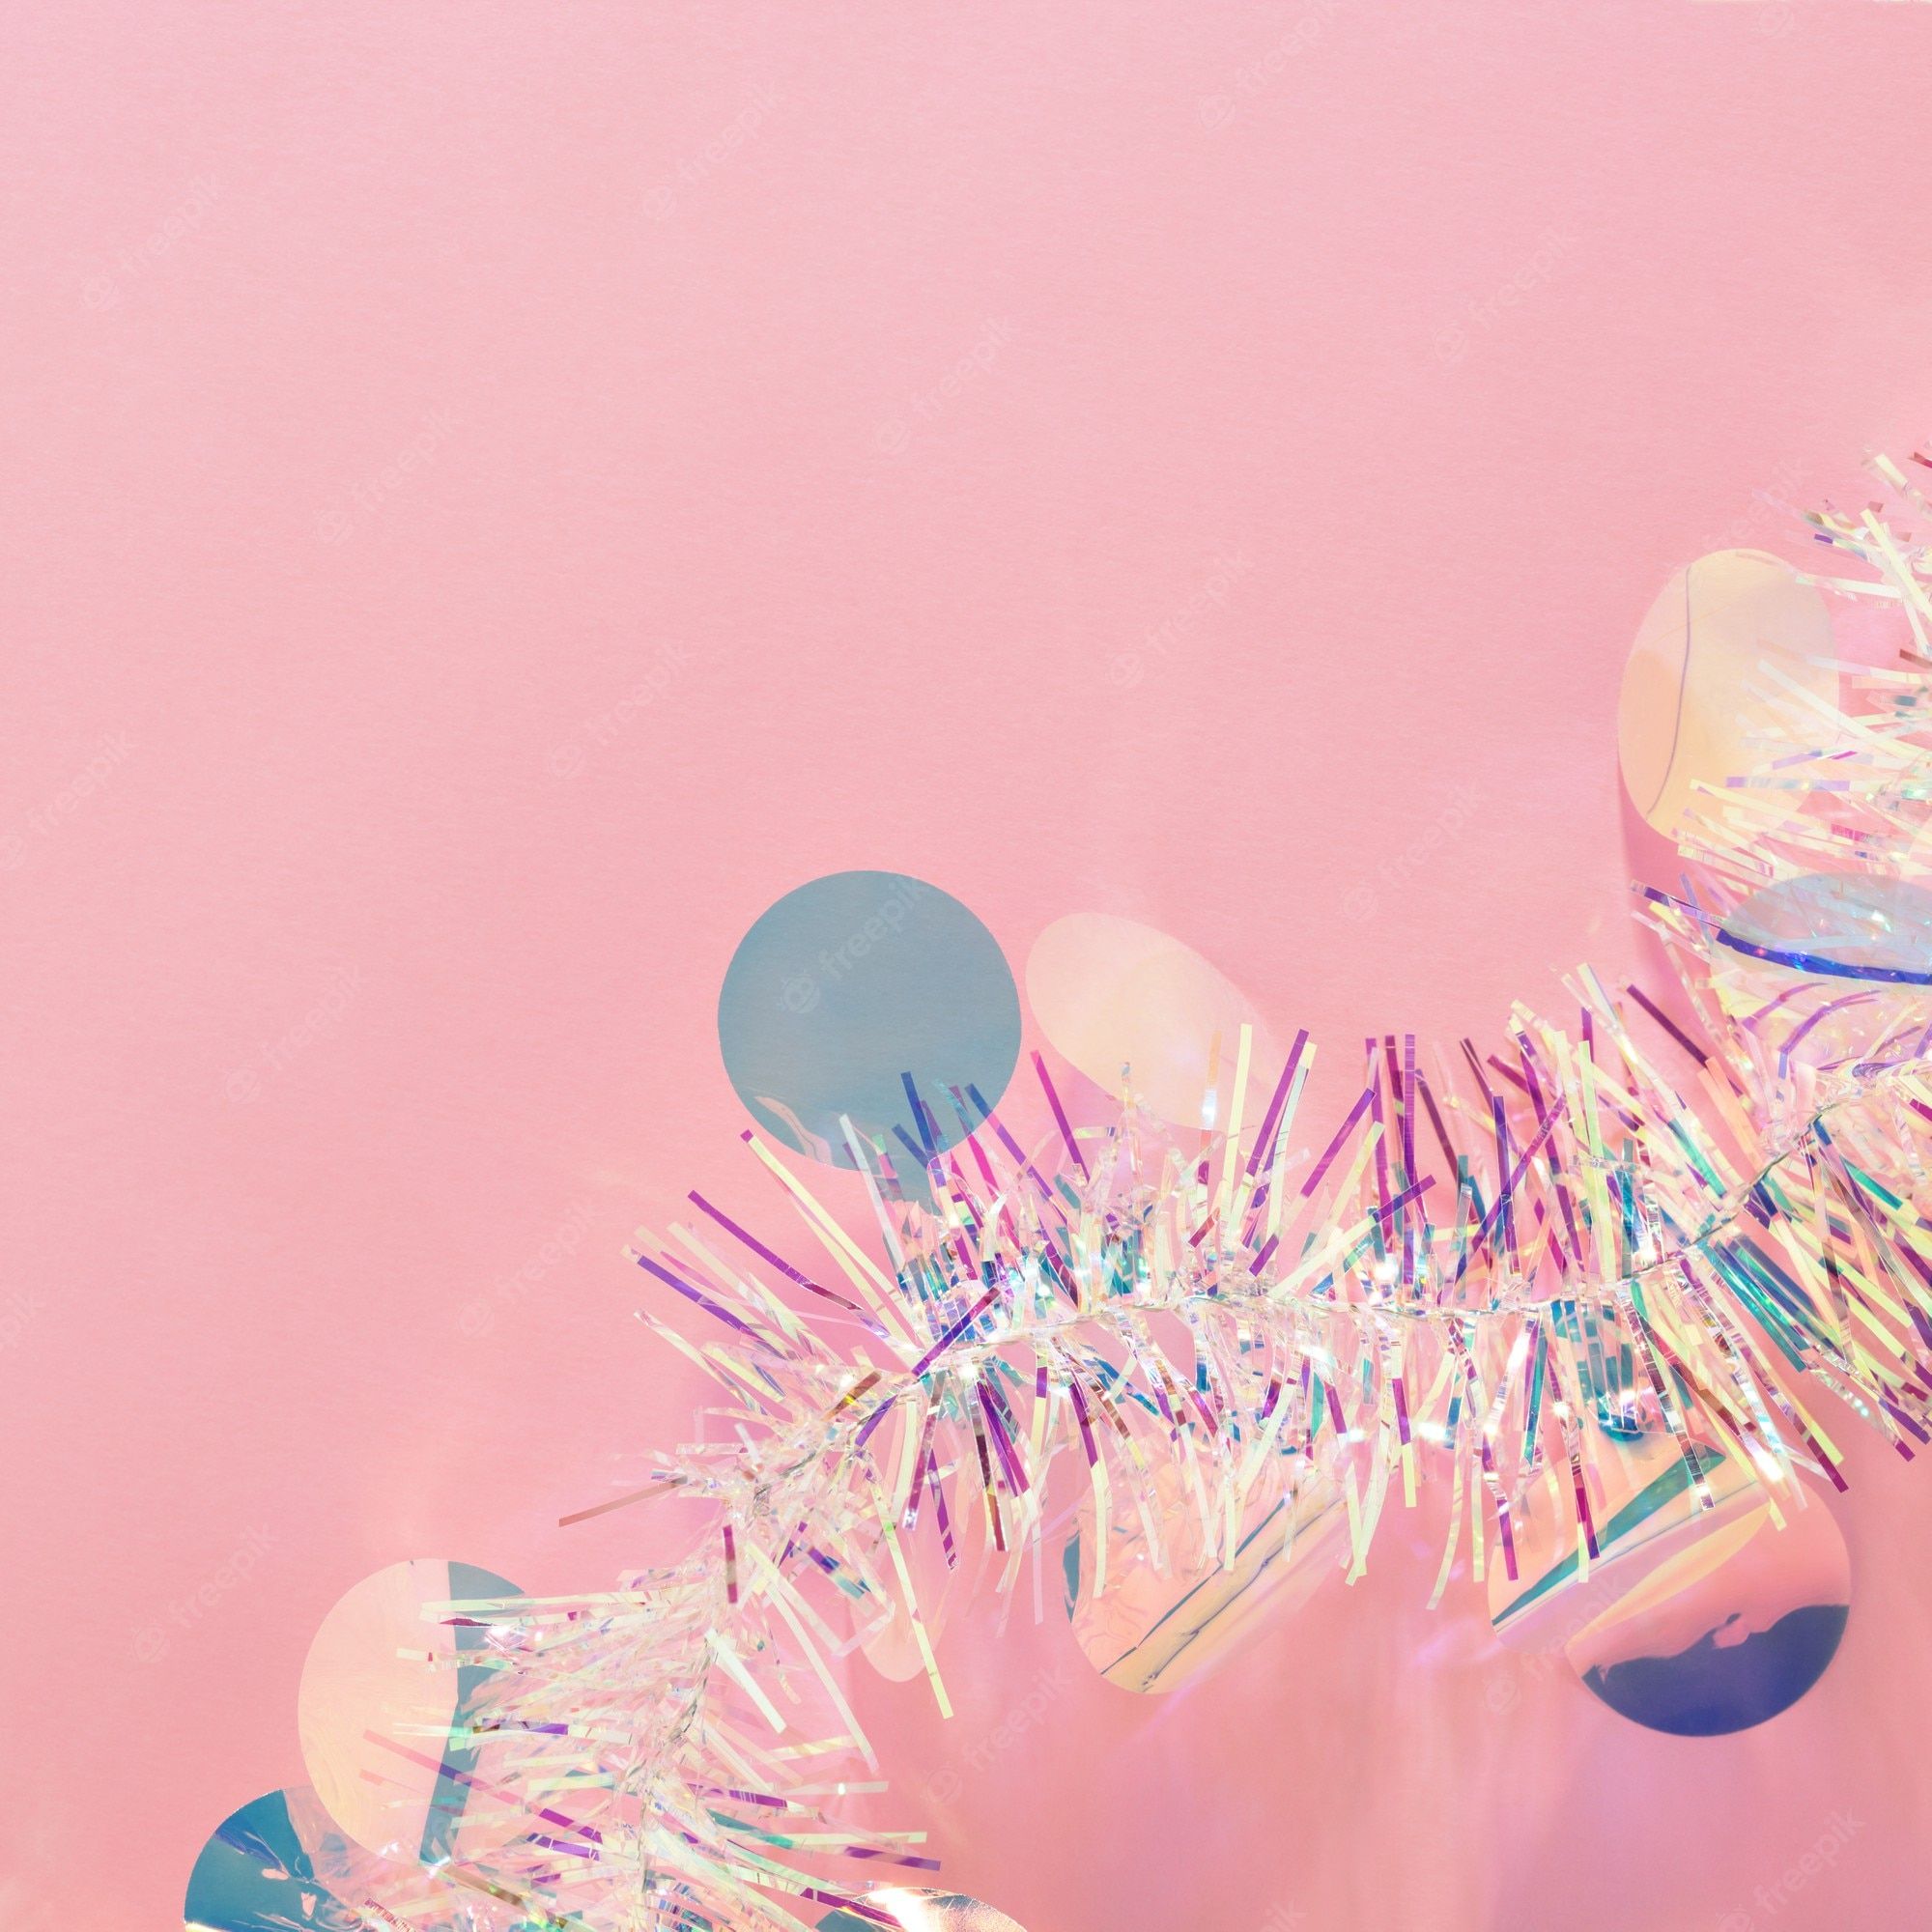  Konfetti Hintergrundbild 2000x2000. Weihnachtslametta girlande und konfetti auf rosa kopienraumhintergrund